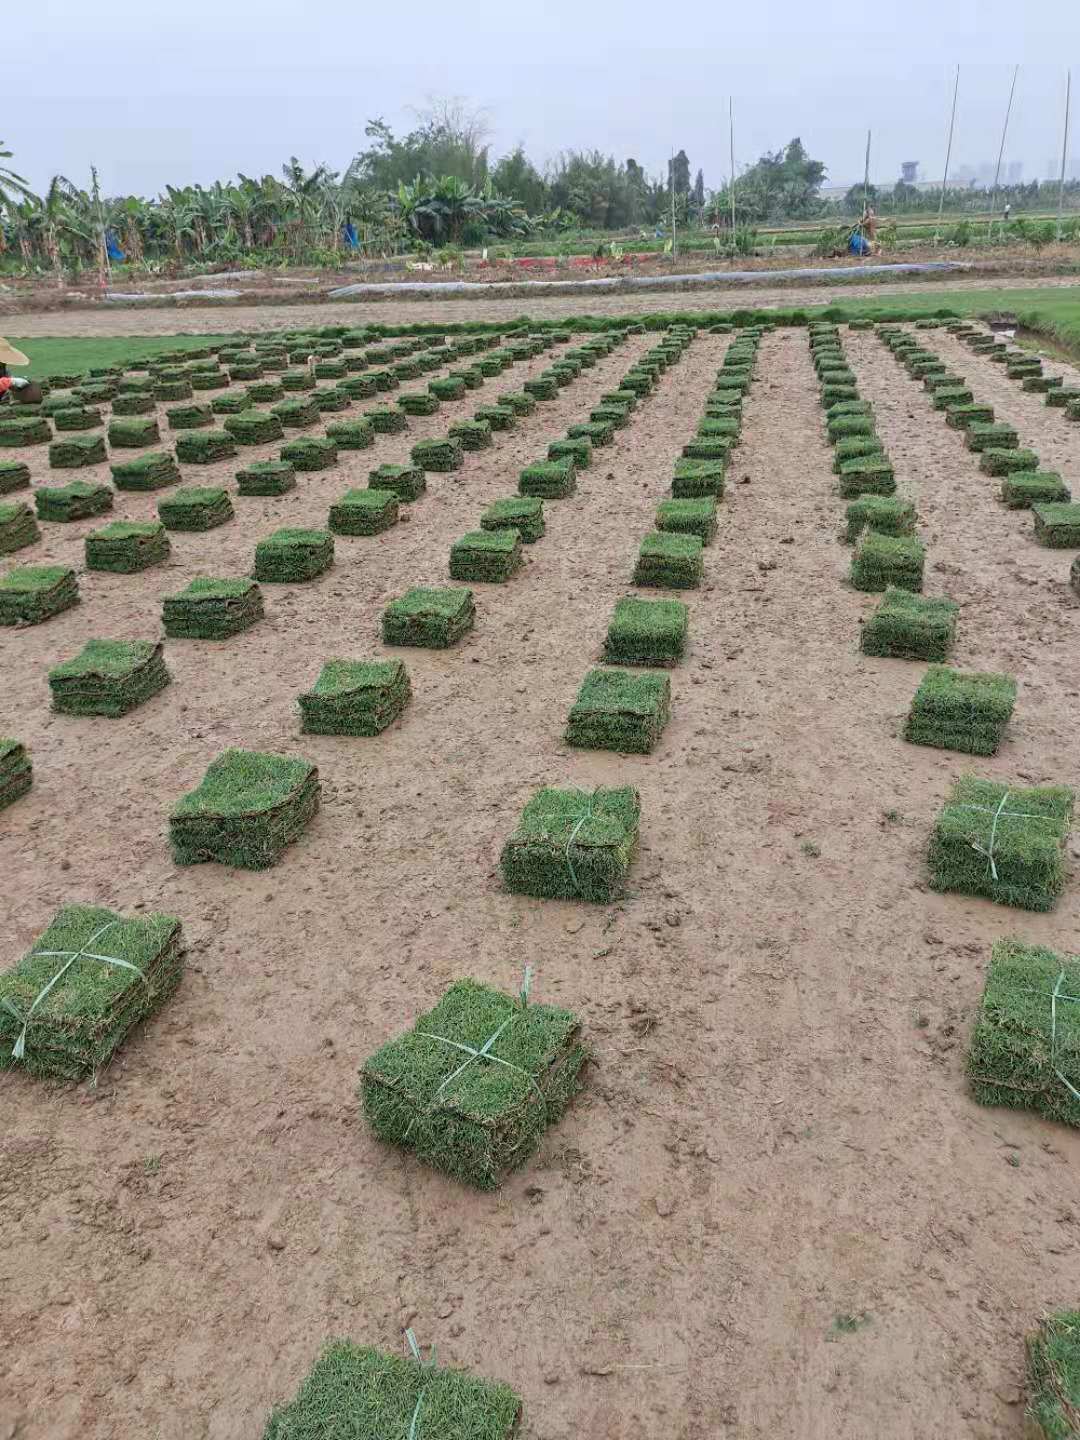 广东马尼拉草卷供应商   马尼拉草卷种植基地